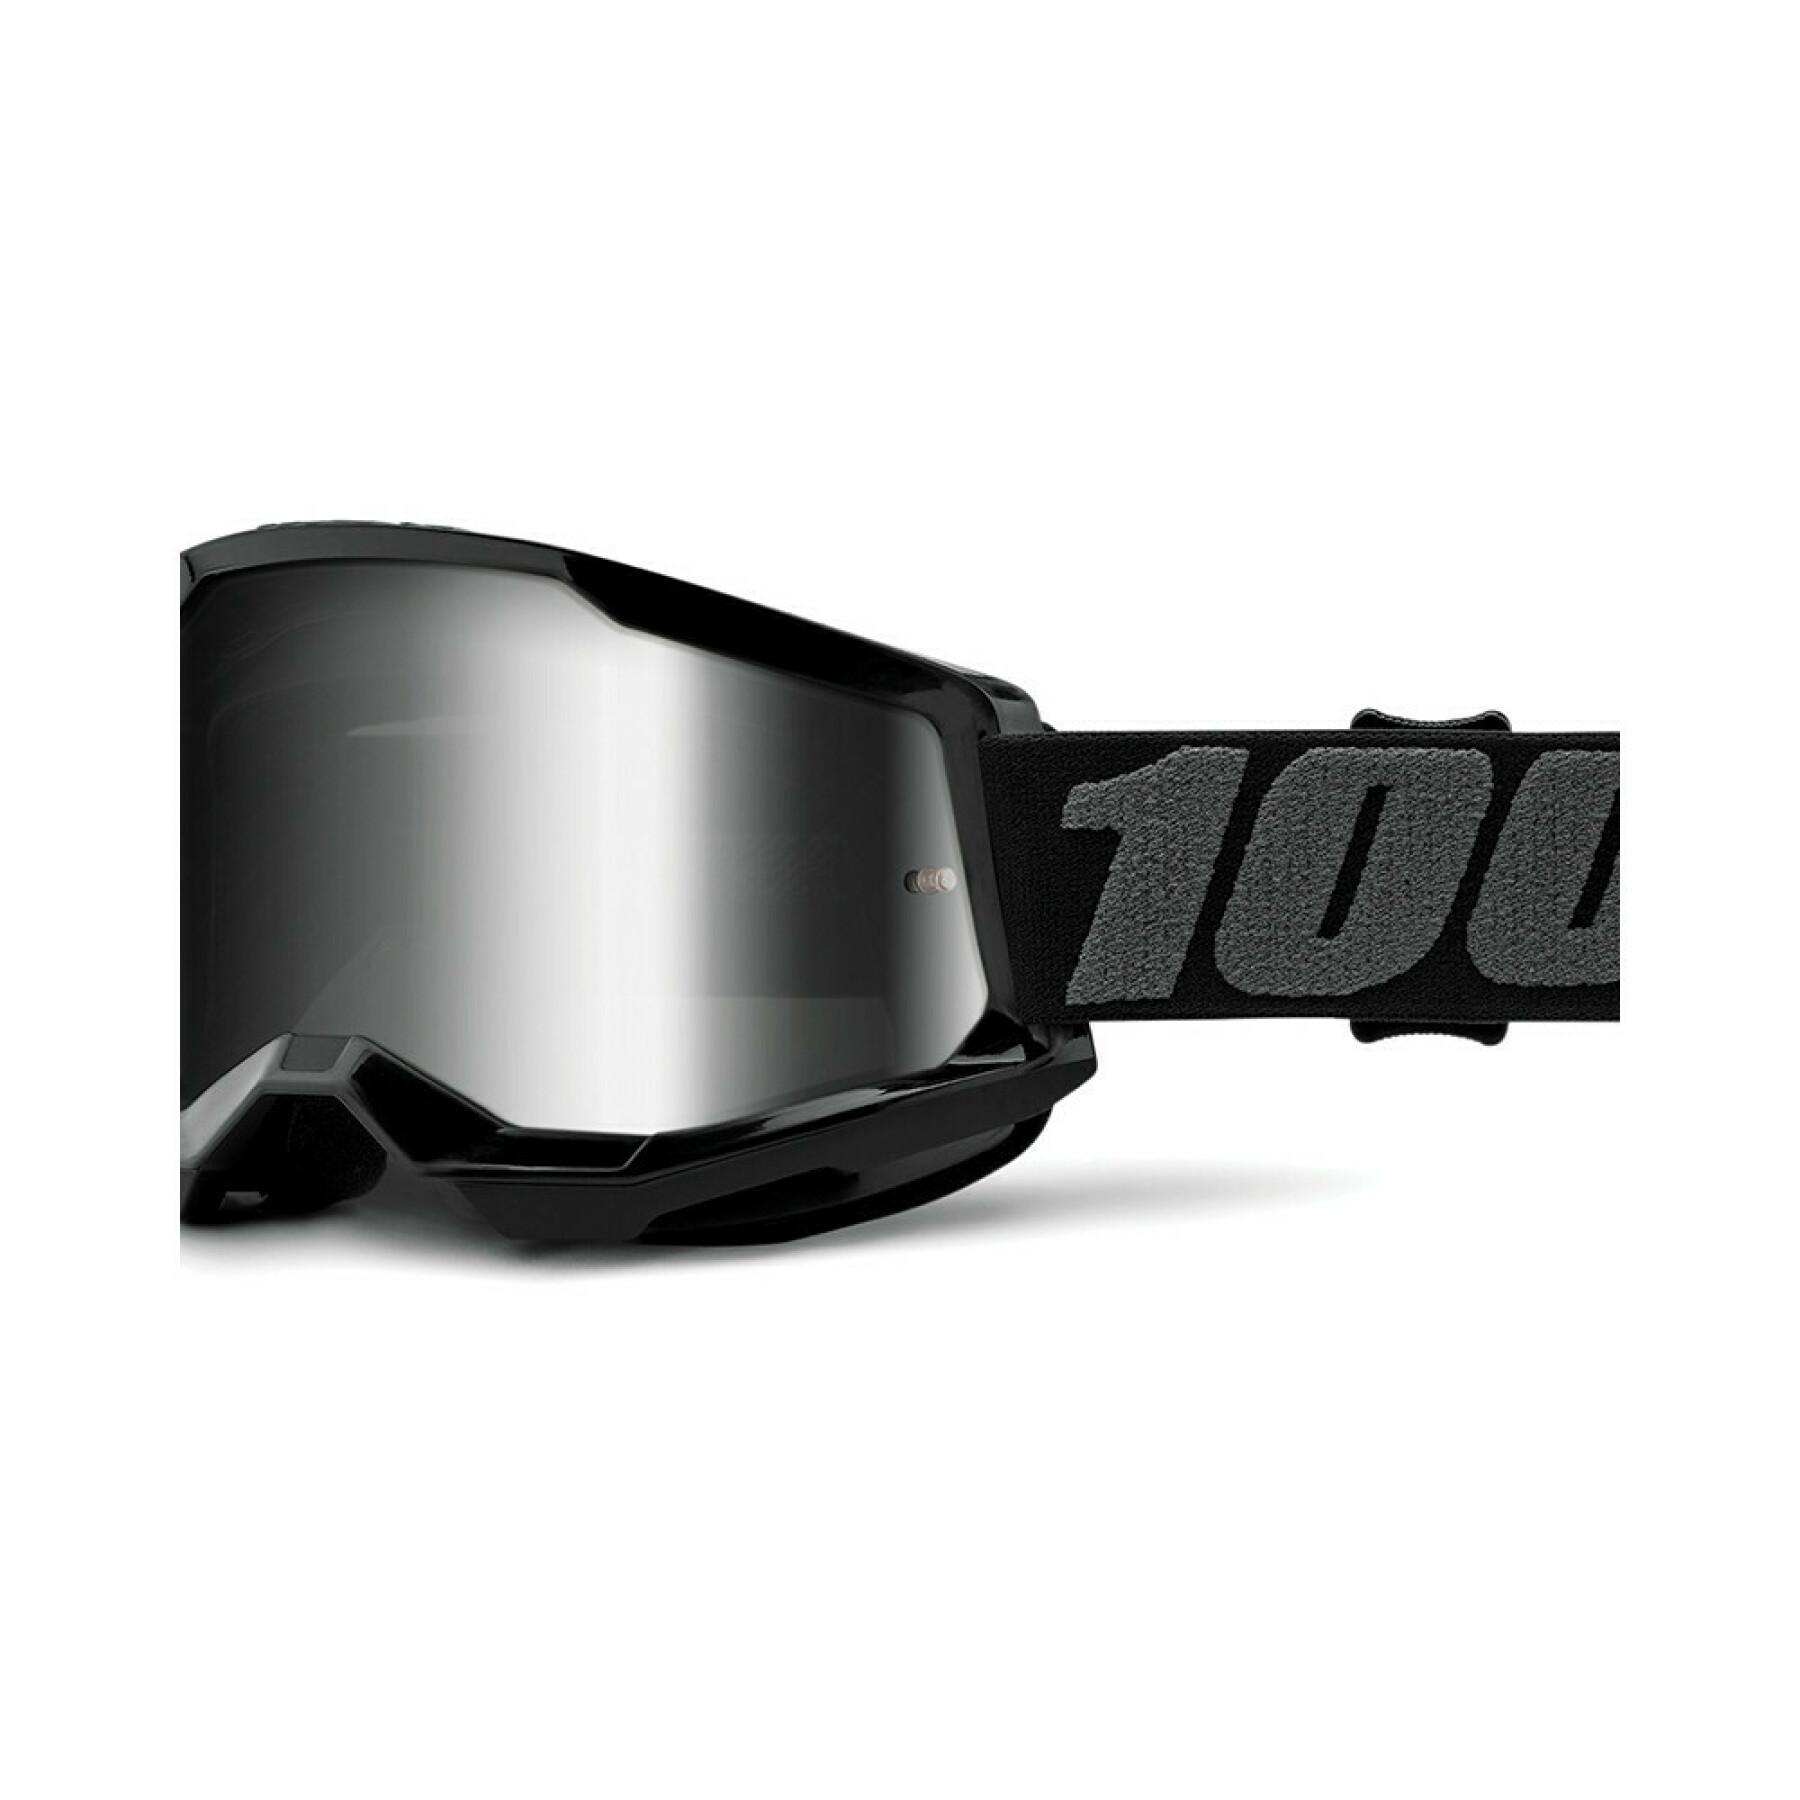 Masque moto cross écran iridium 100% Strata 2